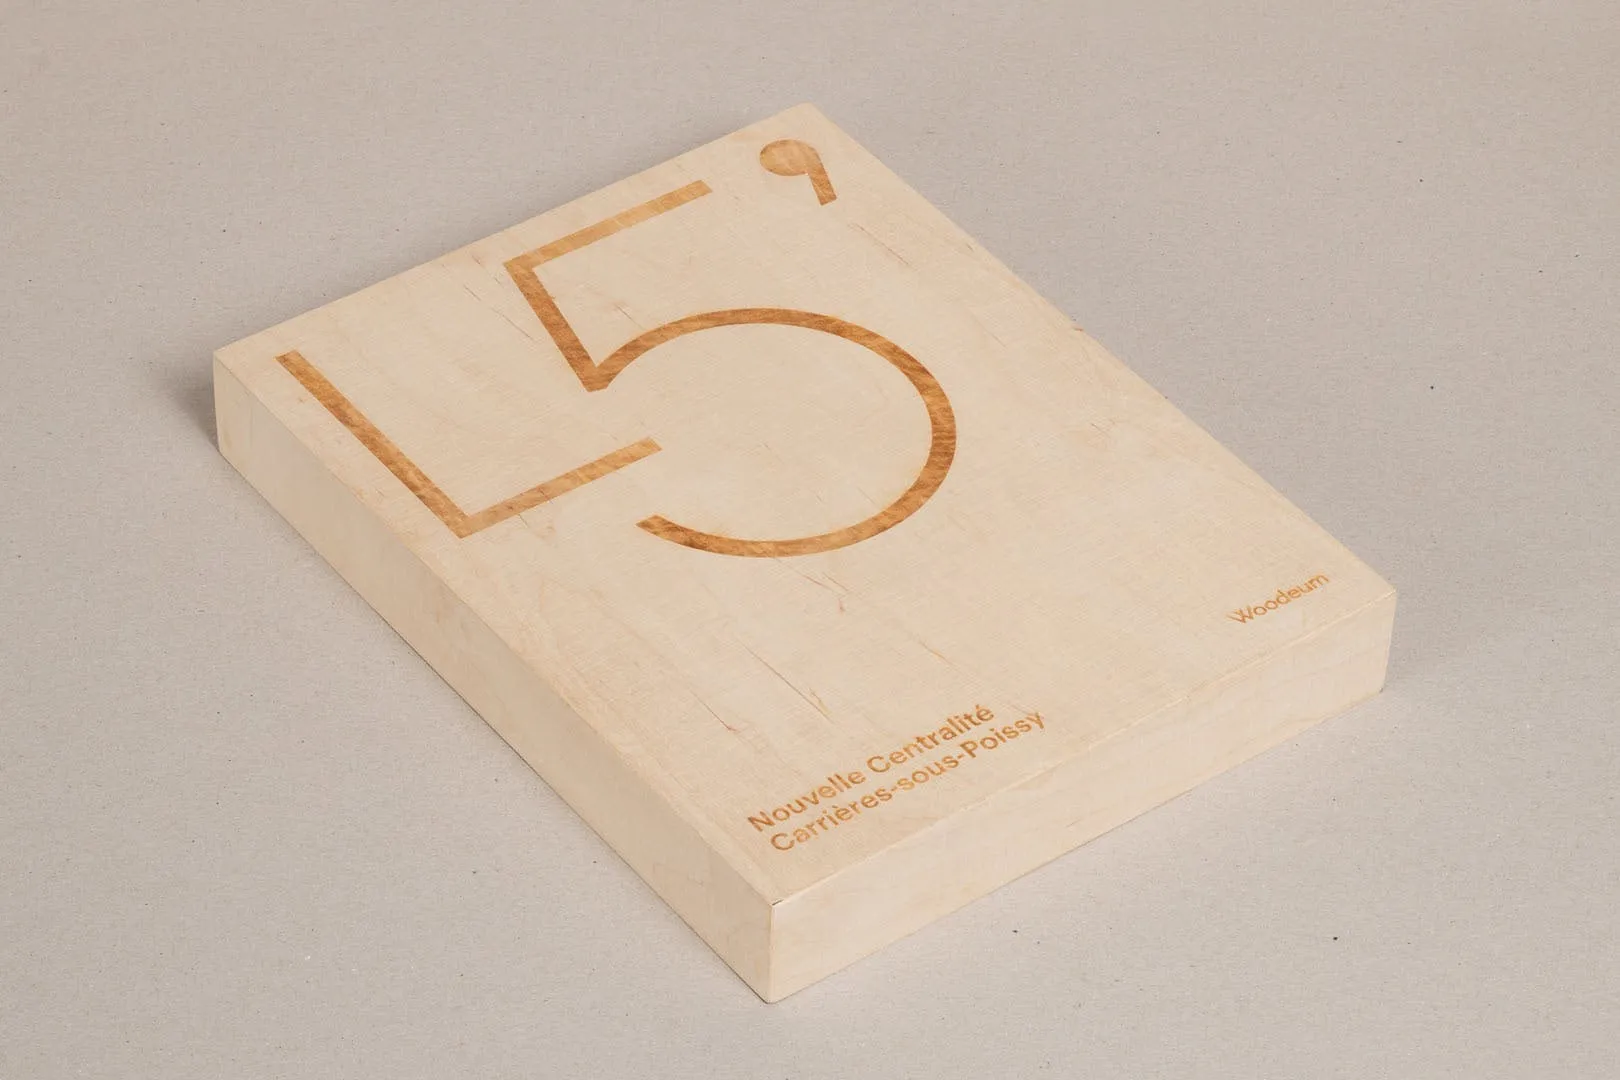 Woodeum – Coffret bois et livret papier